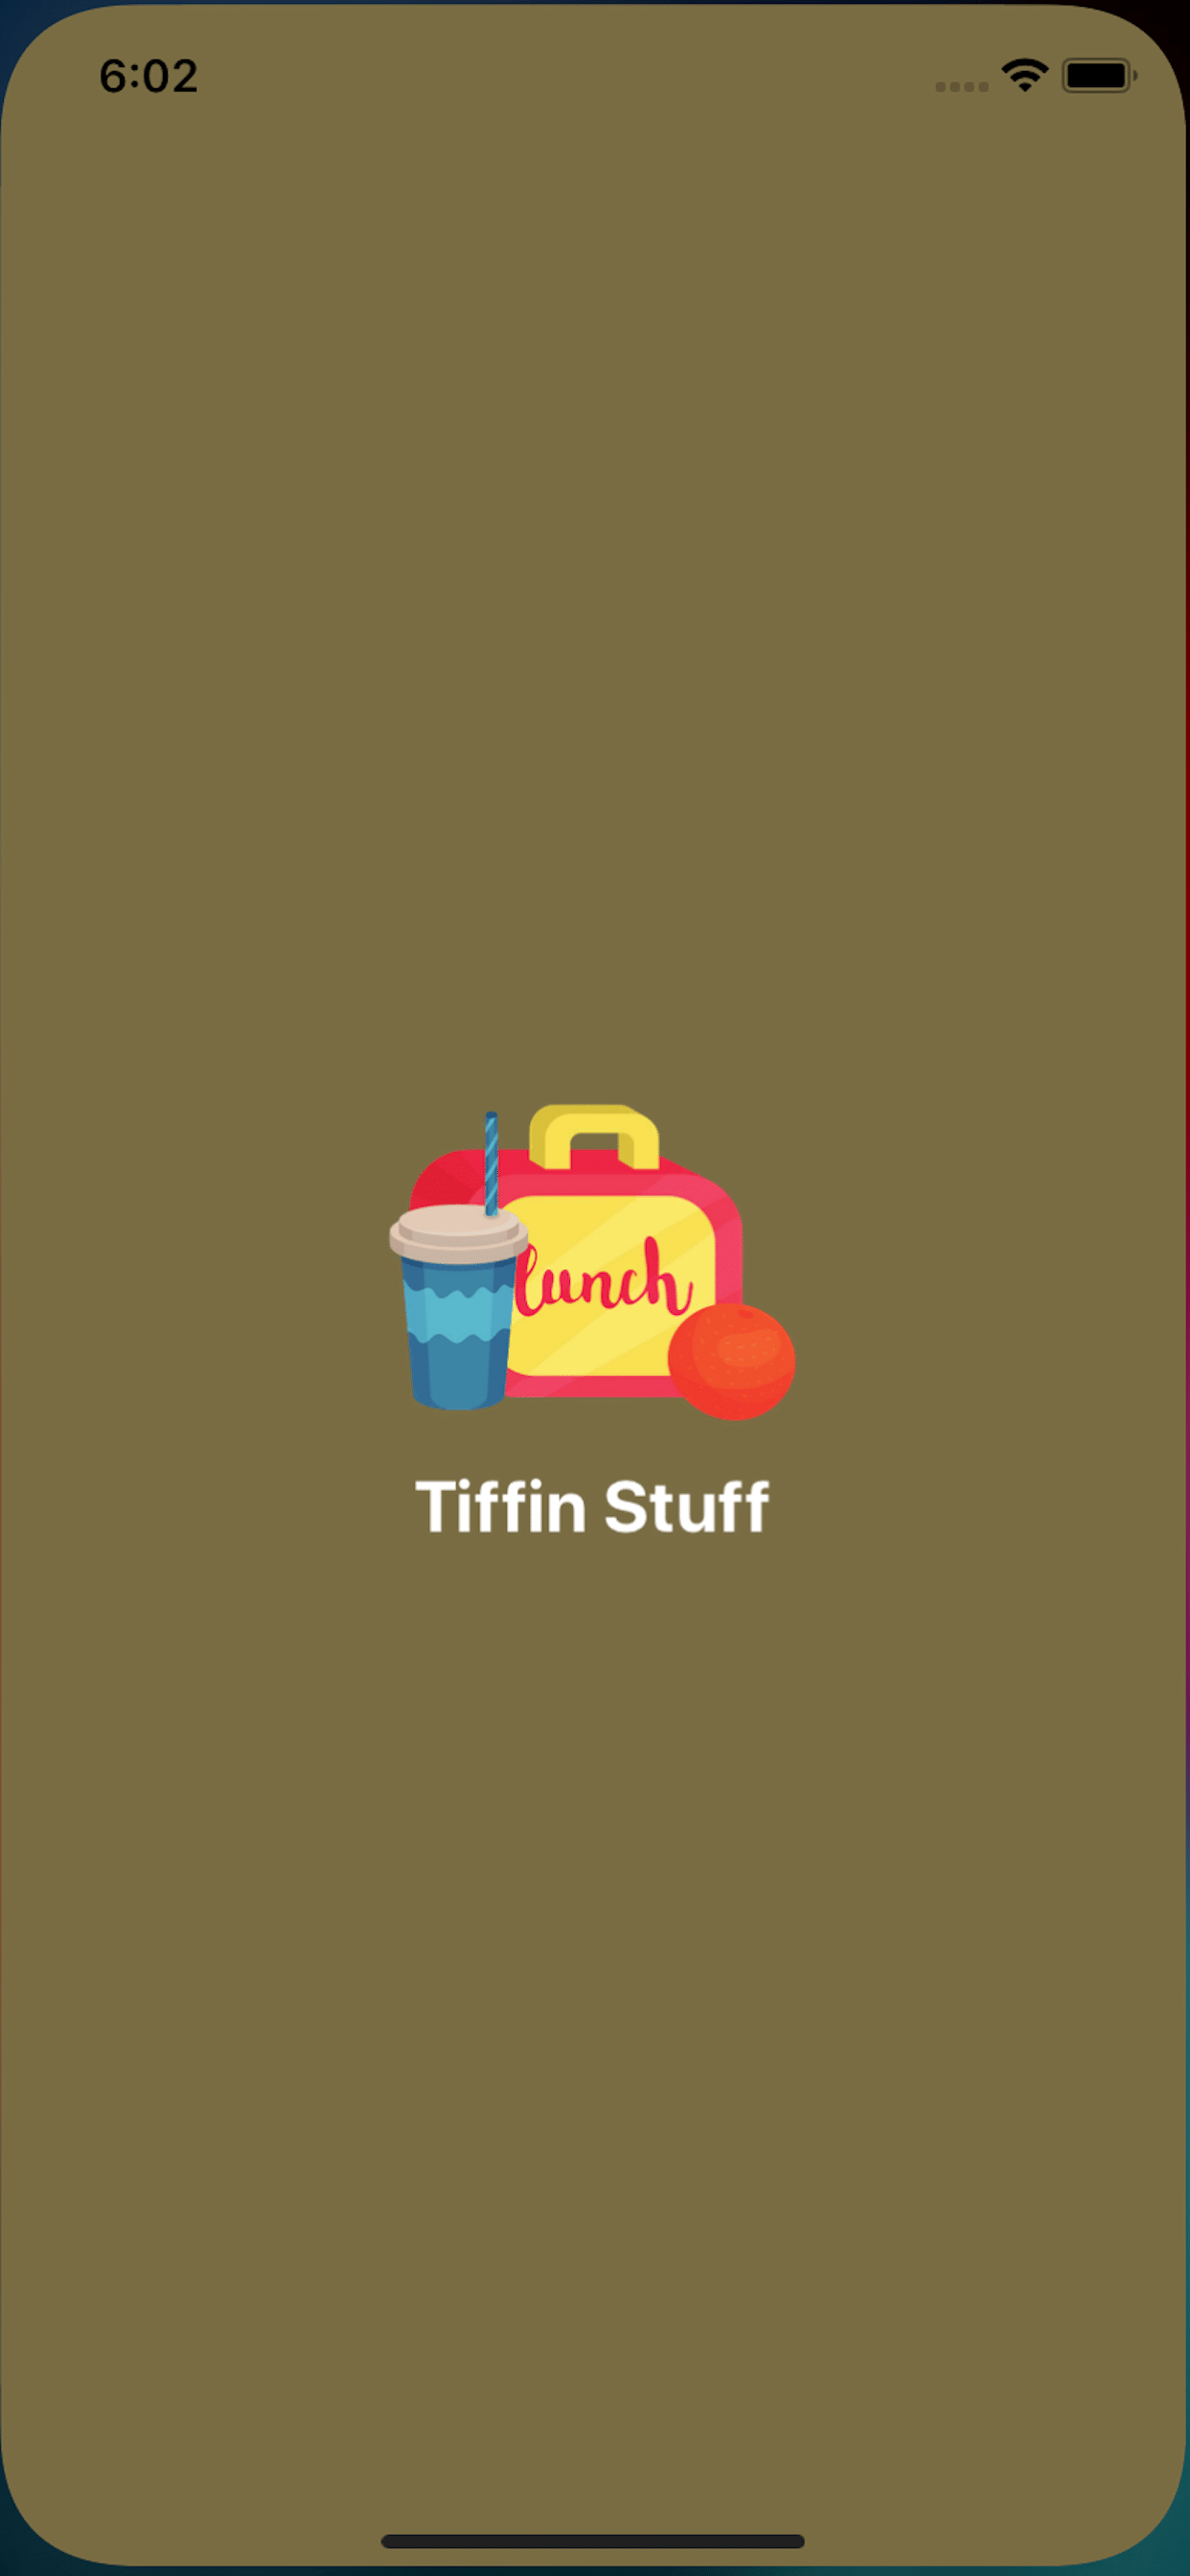 Tiffin-Stuff-Application